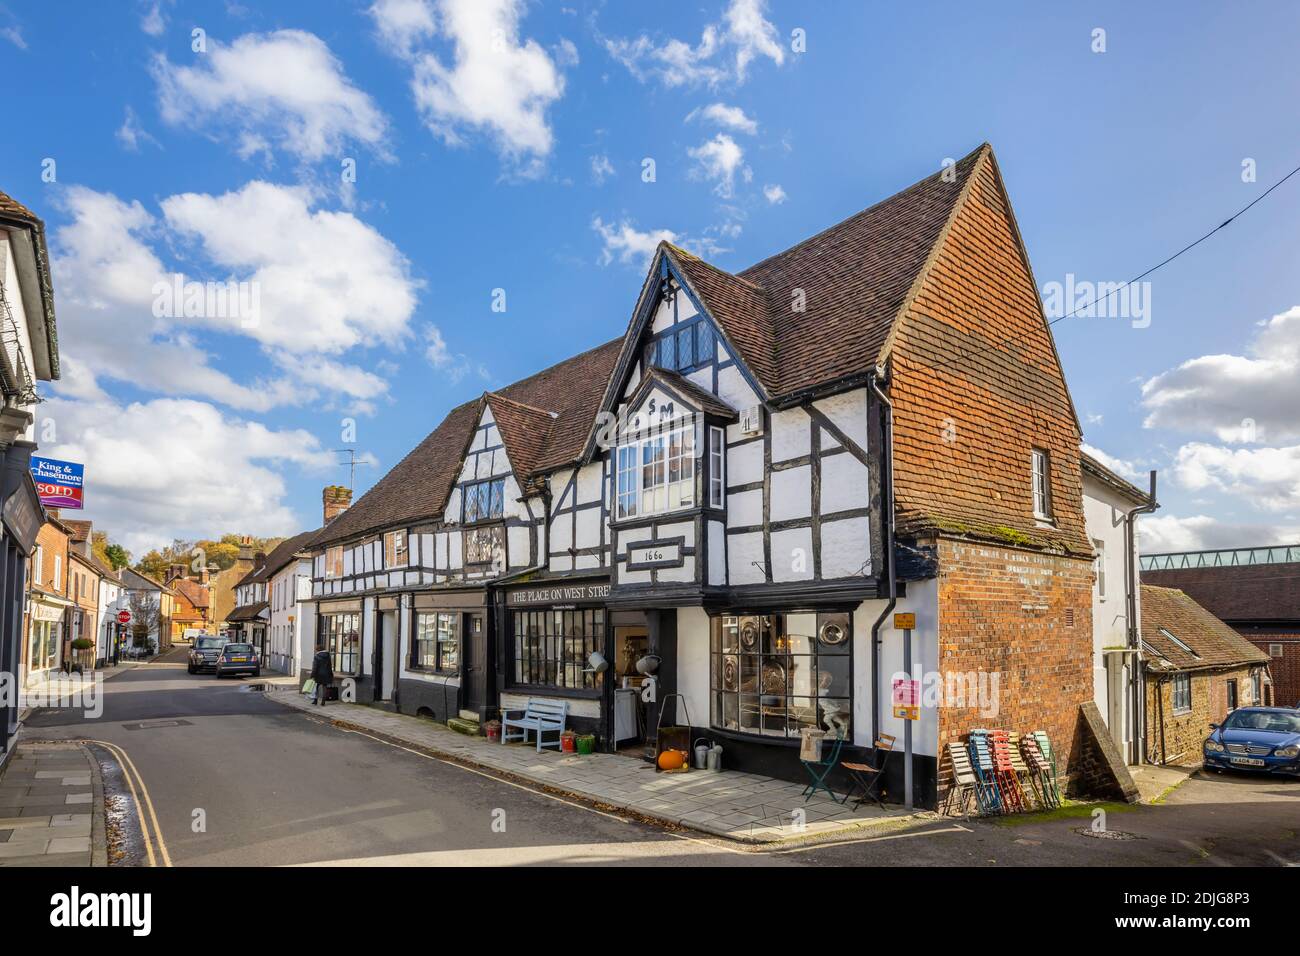 Der Ort an der West Street und Antiquitätengeschäfte in historischen schwarz-weiß-Fachwerkhäusern, West Street, Midhurst, eine Stadt in West Sussex, SE England Stockfoto